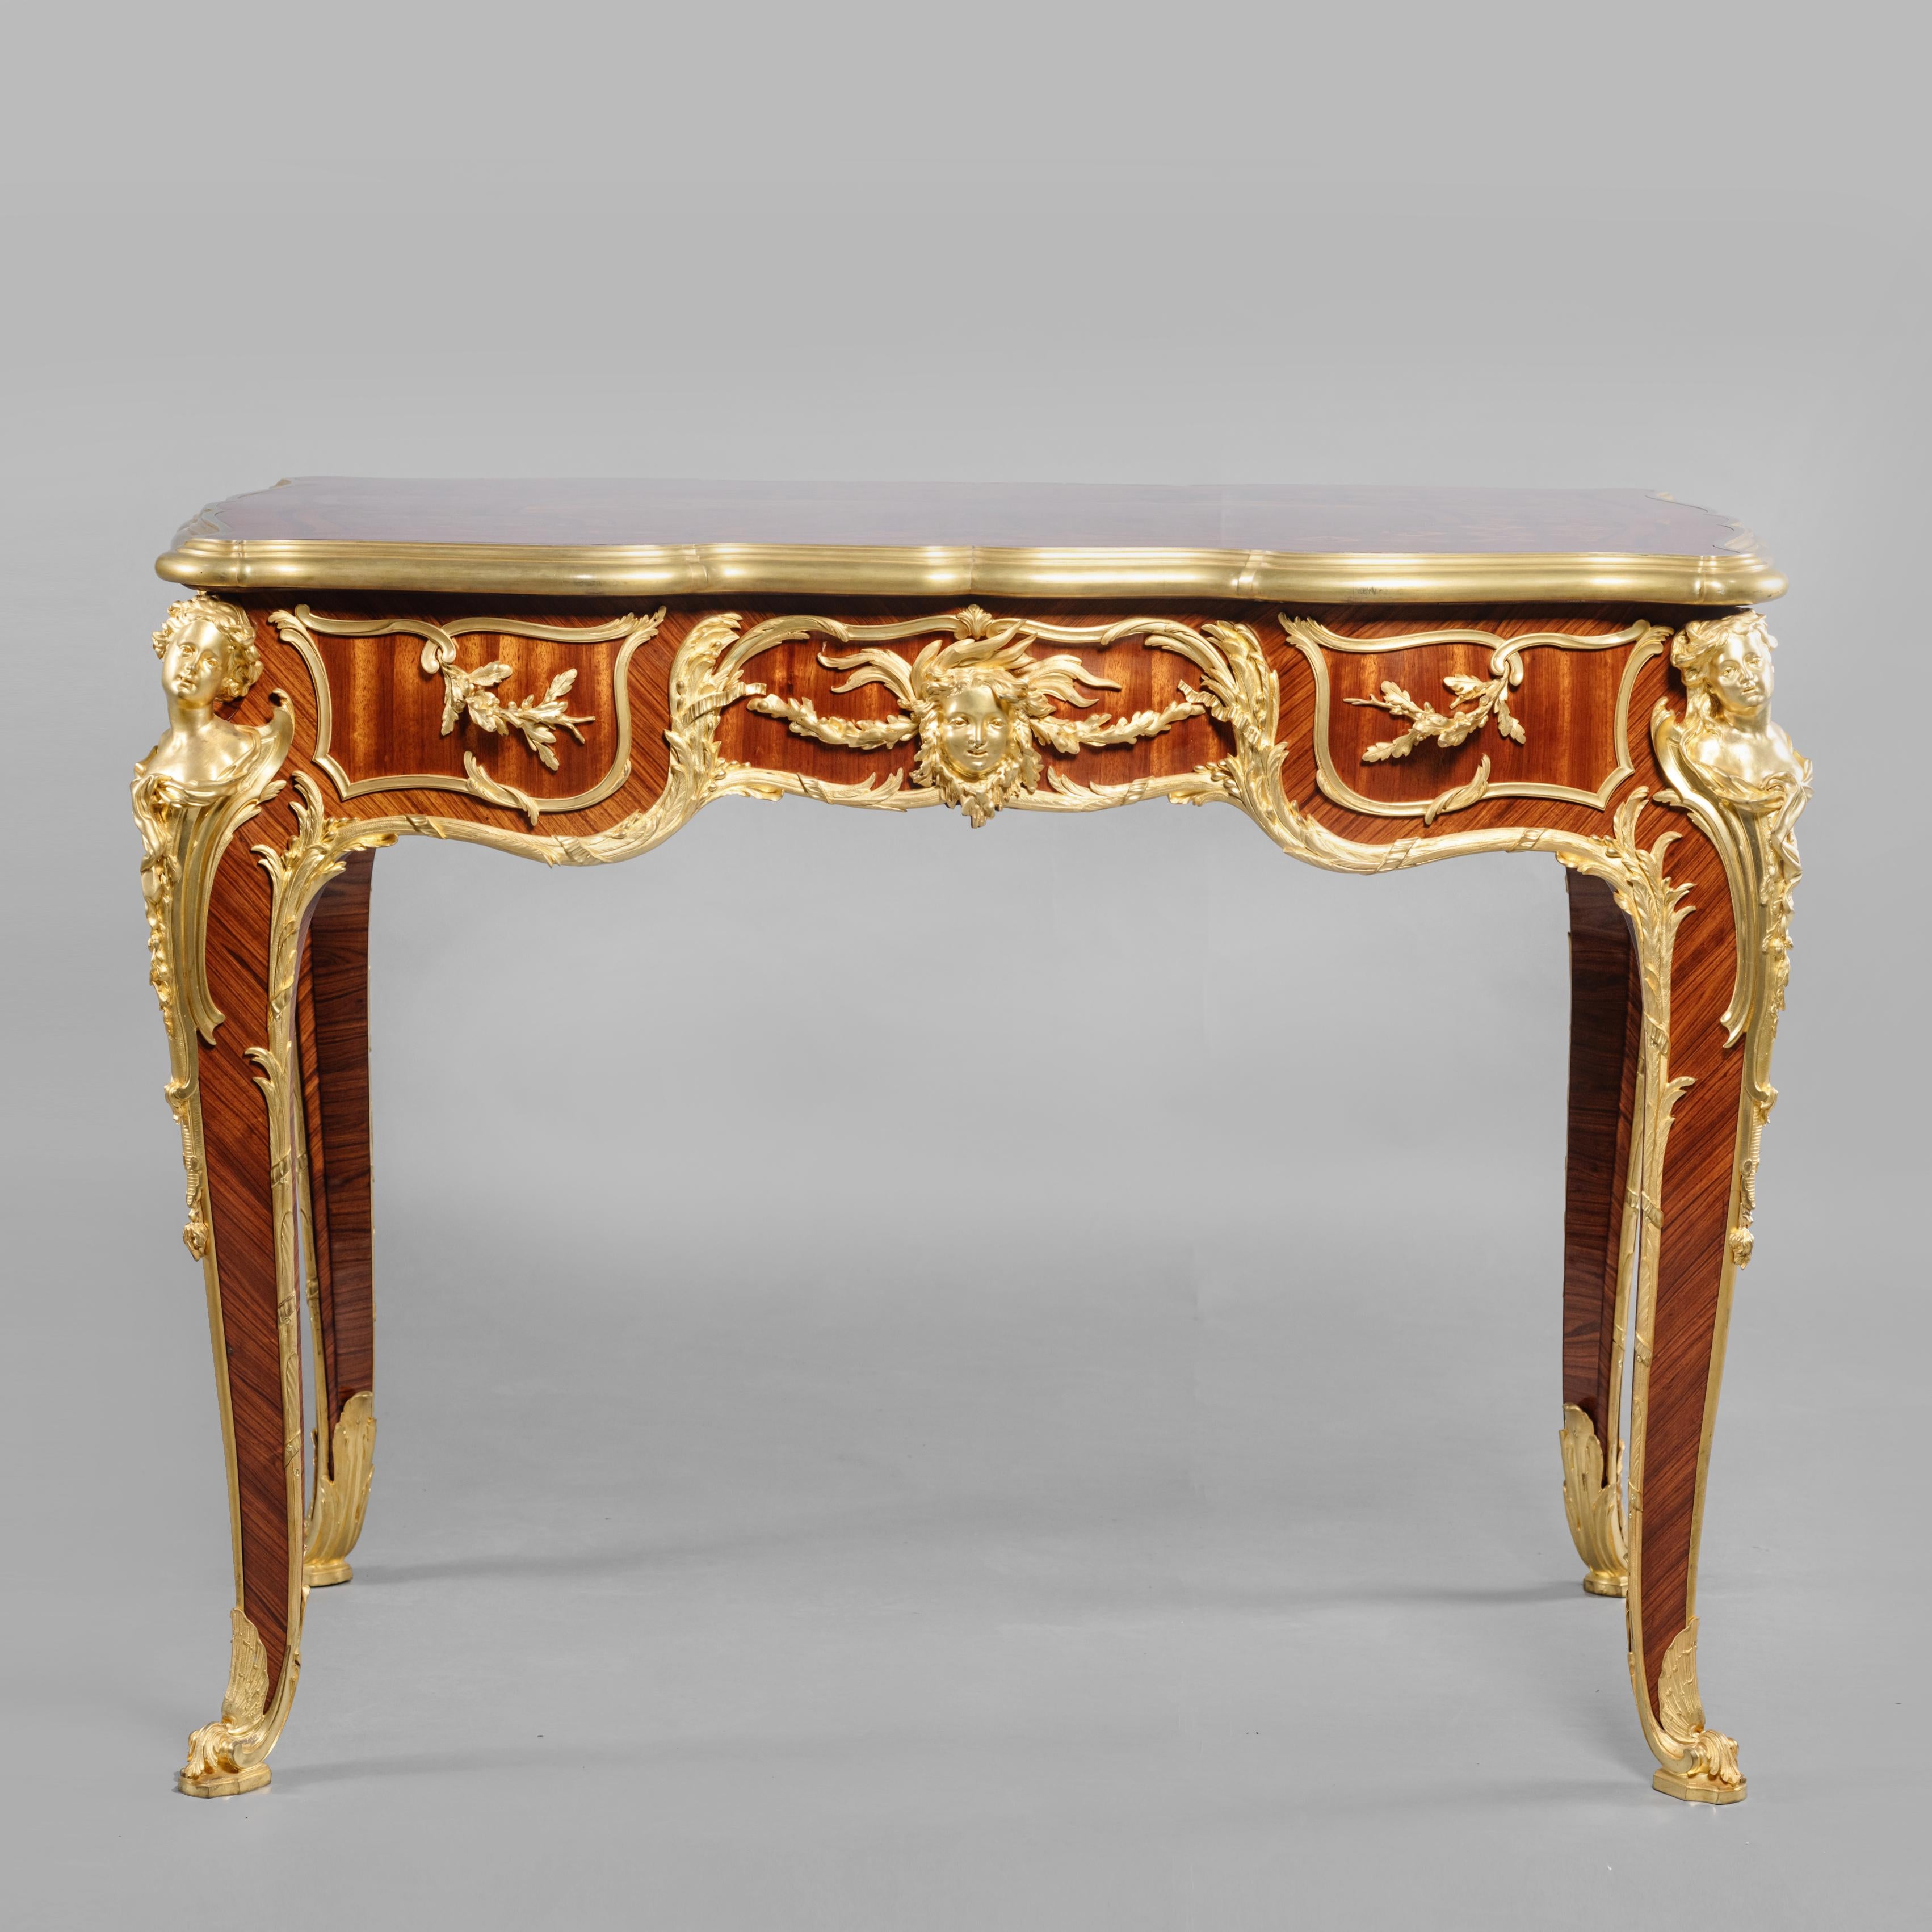 Exceptionnellement rare et importante table centrale de style Louis XV en marqueterie de bronze doré par François Linke, les montures ont été conçues par Léon Messagé.
 
Index Linke n° 930. 
Signé 